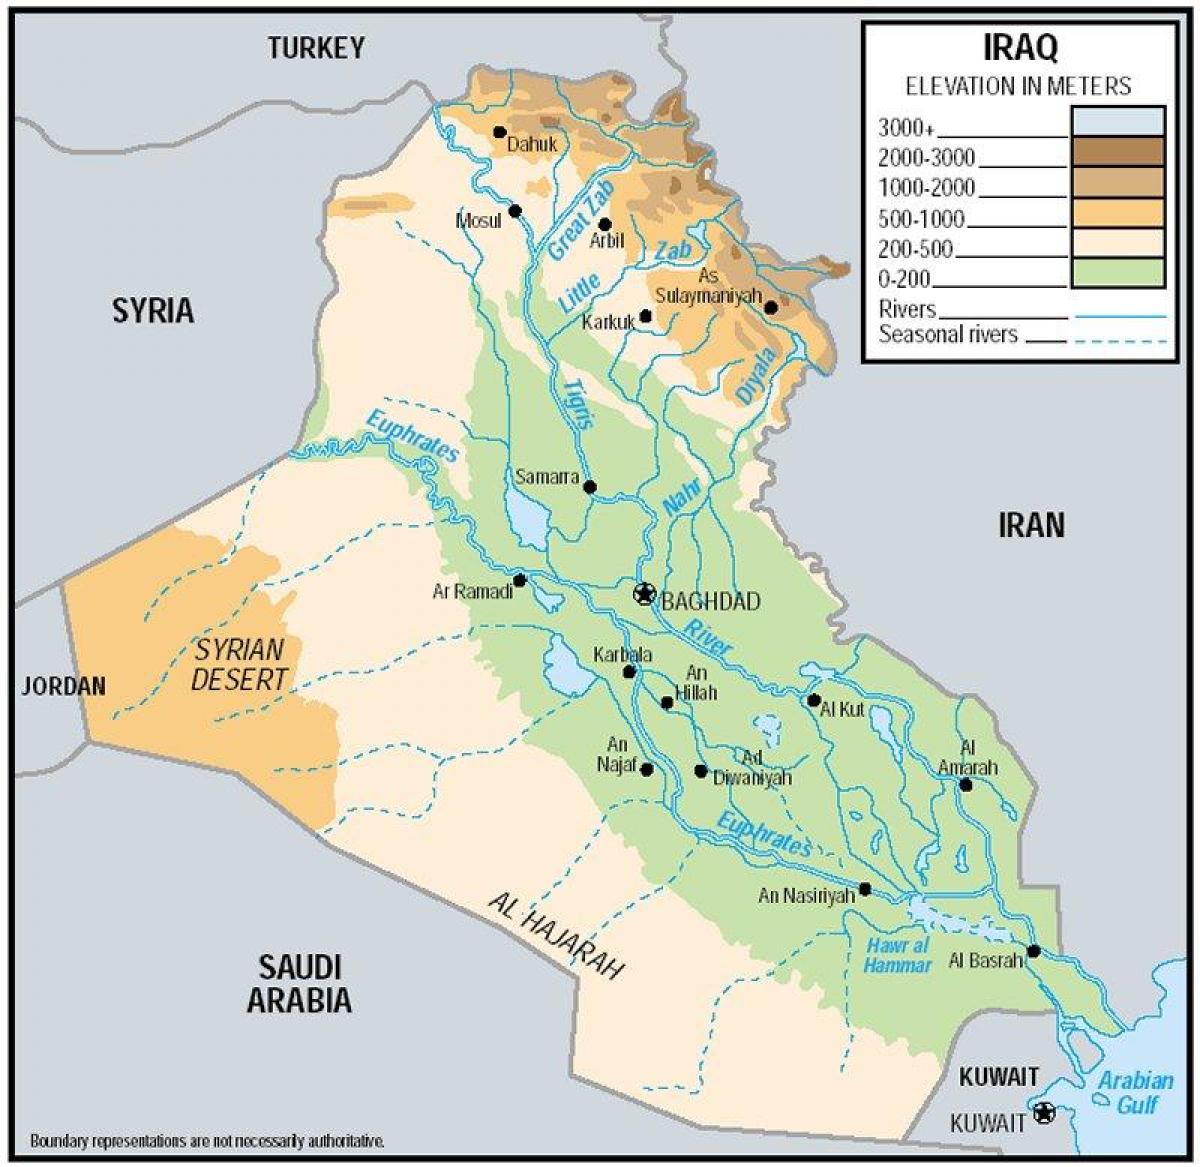 Mapa de Iraq elevación